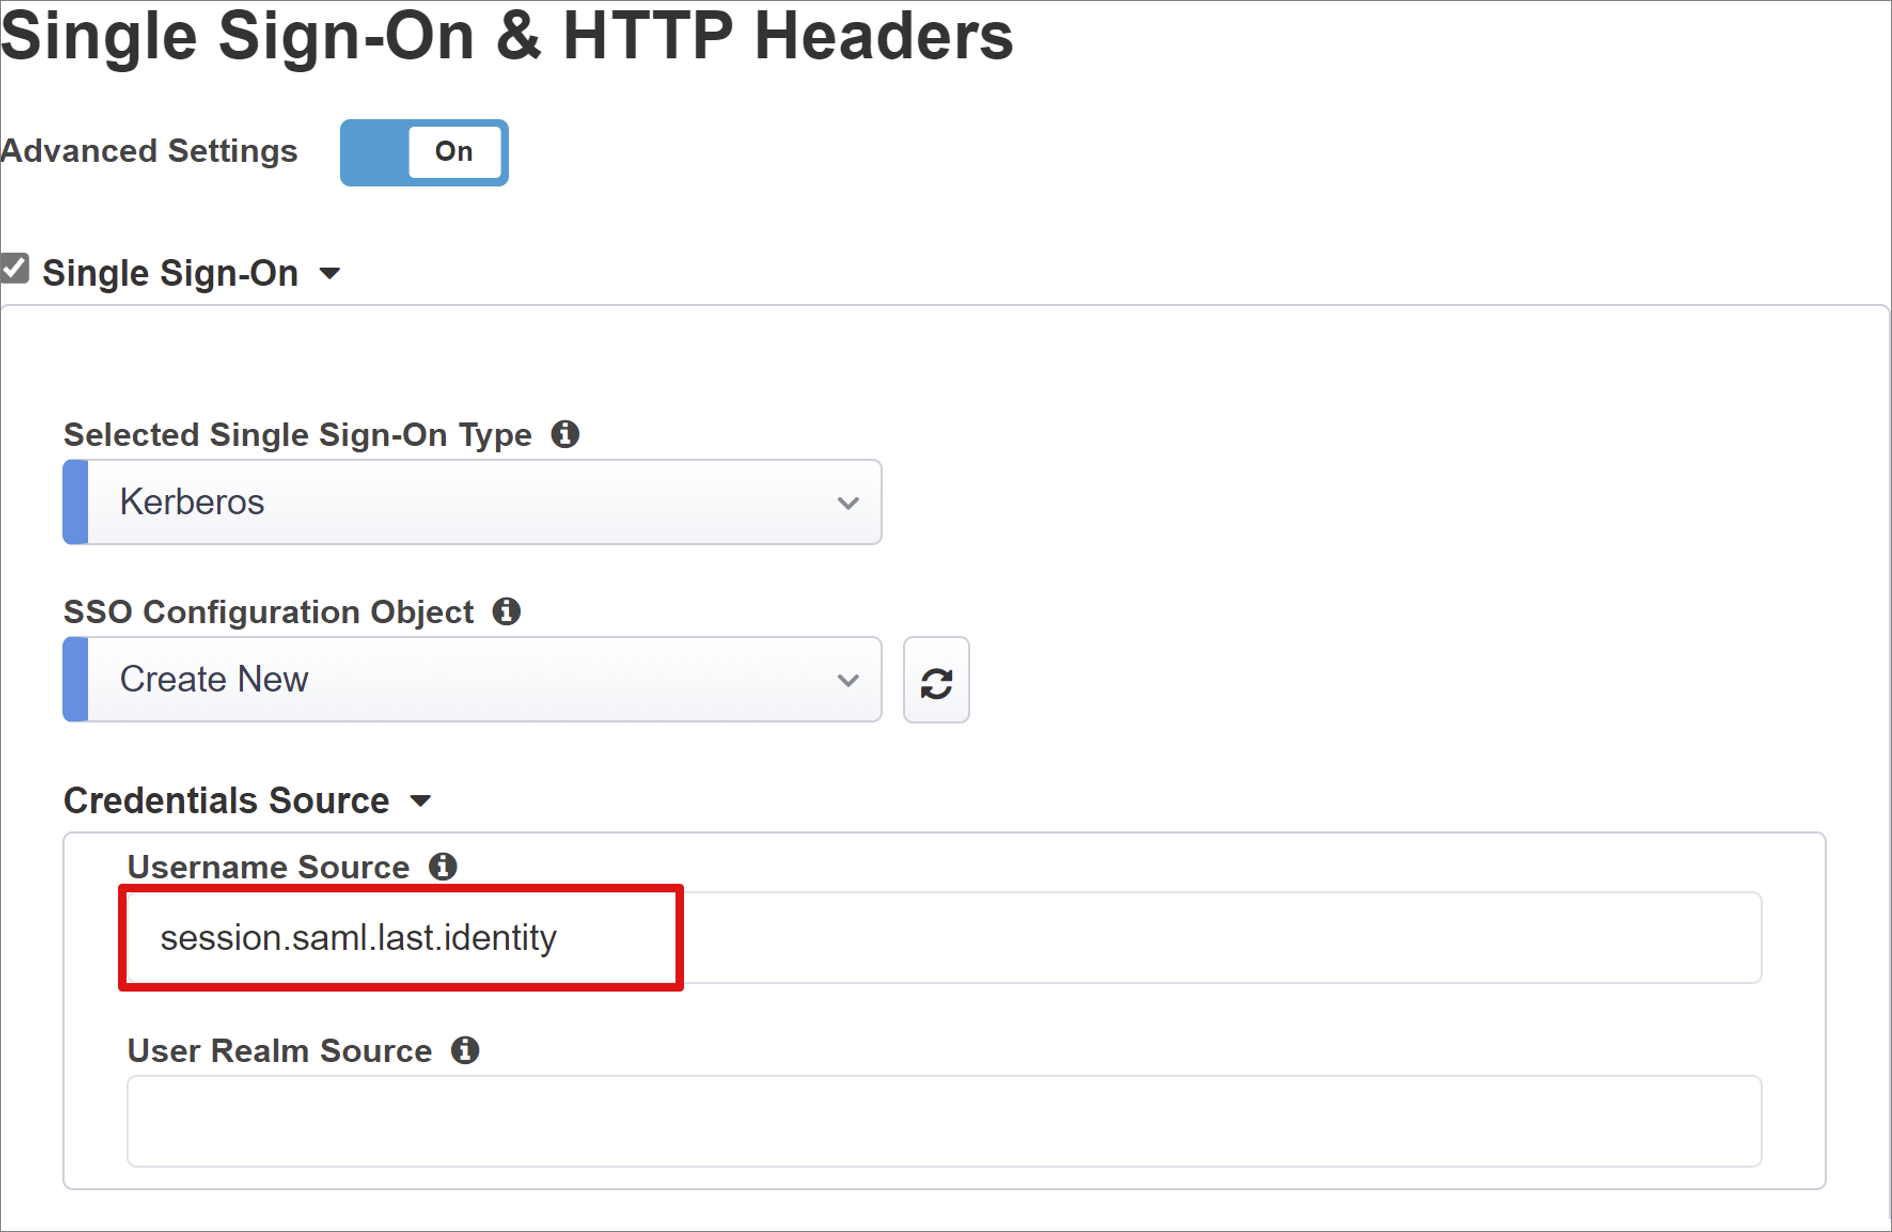 Captura de tela das opções e seleções para Logon Único e Cabeçalhos HTTP.